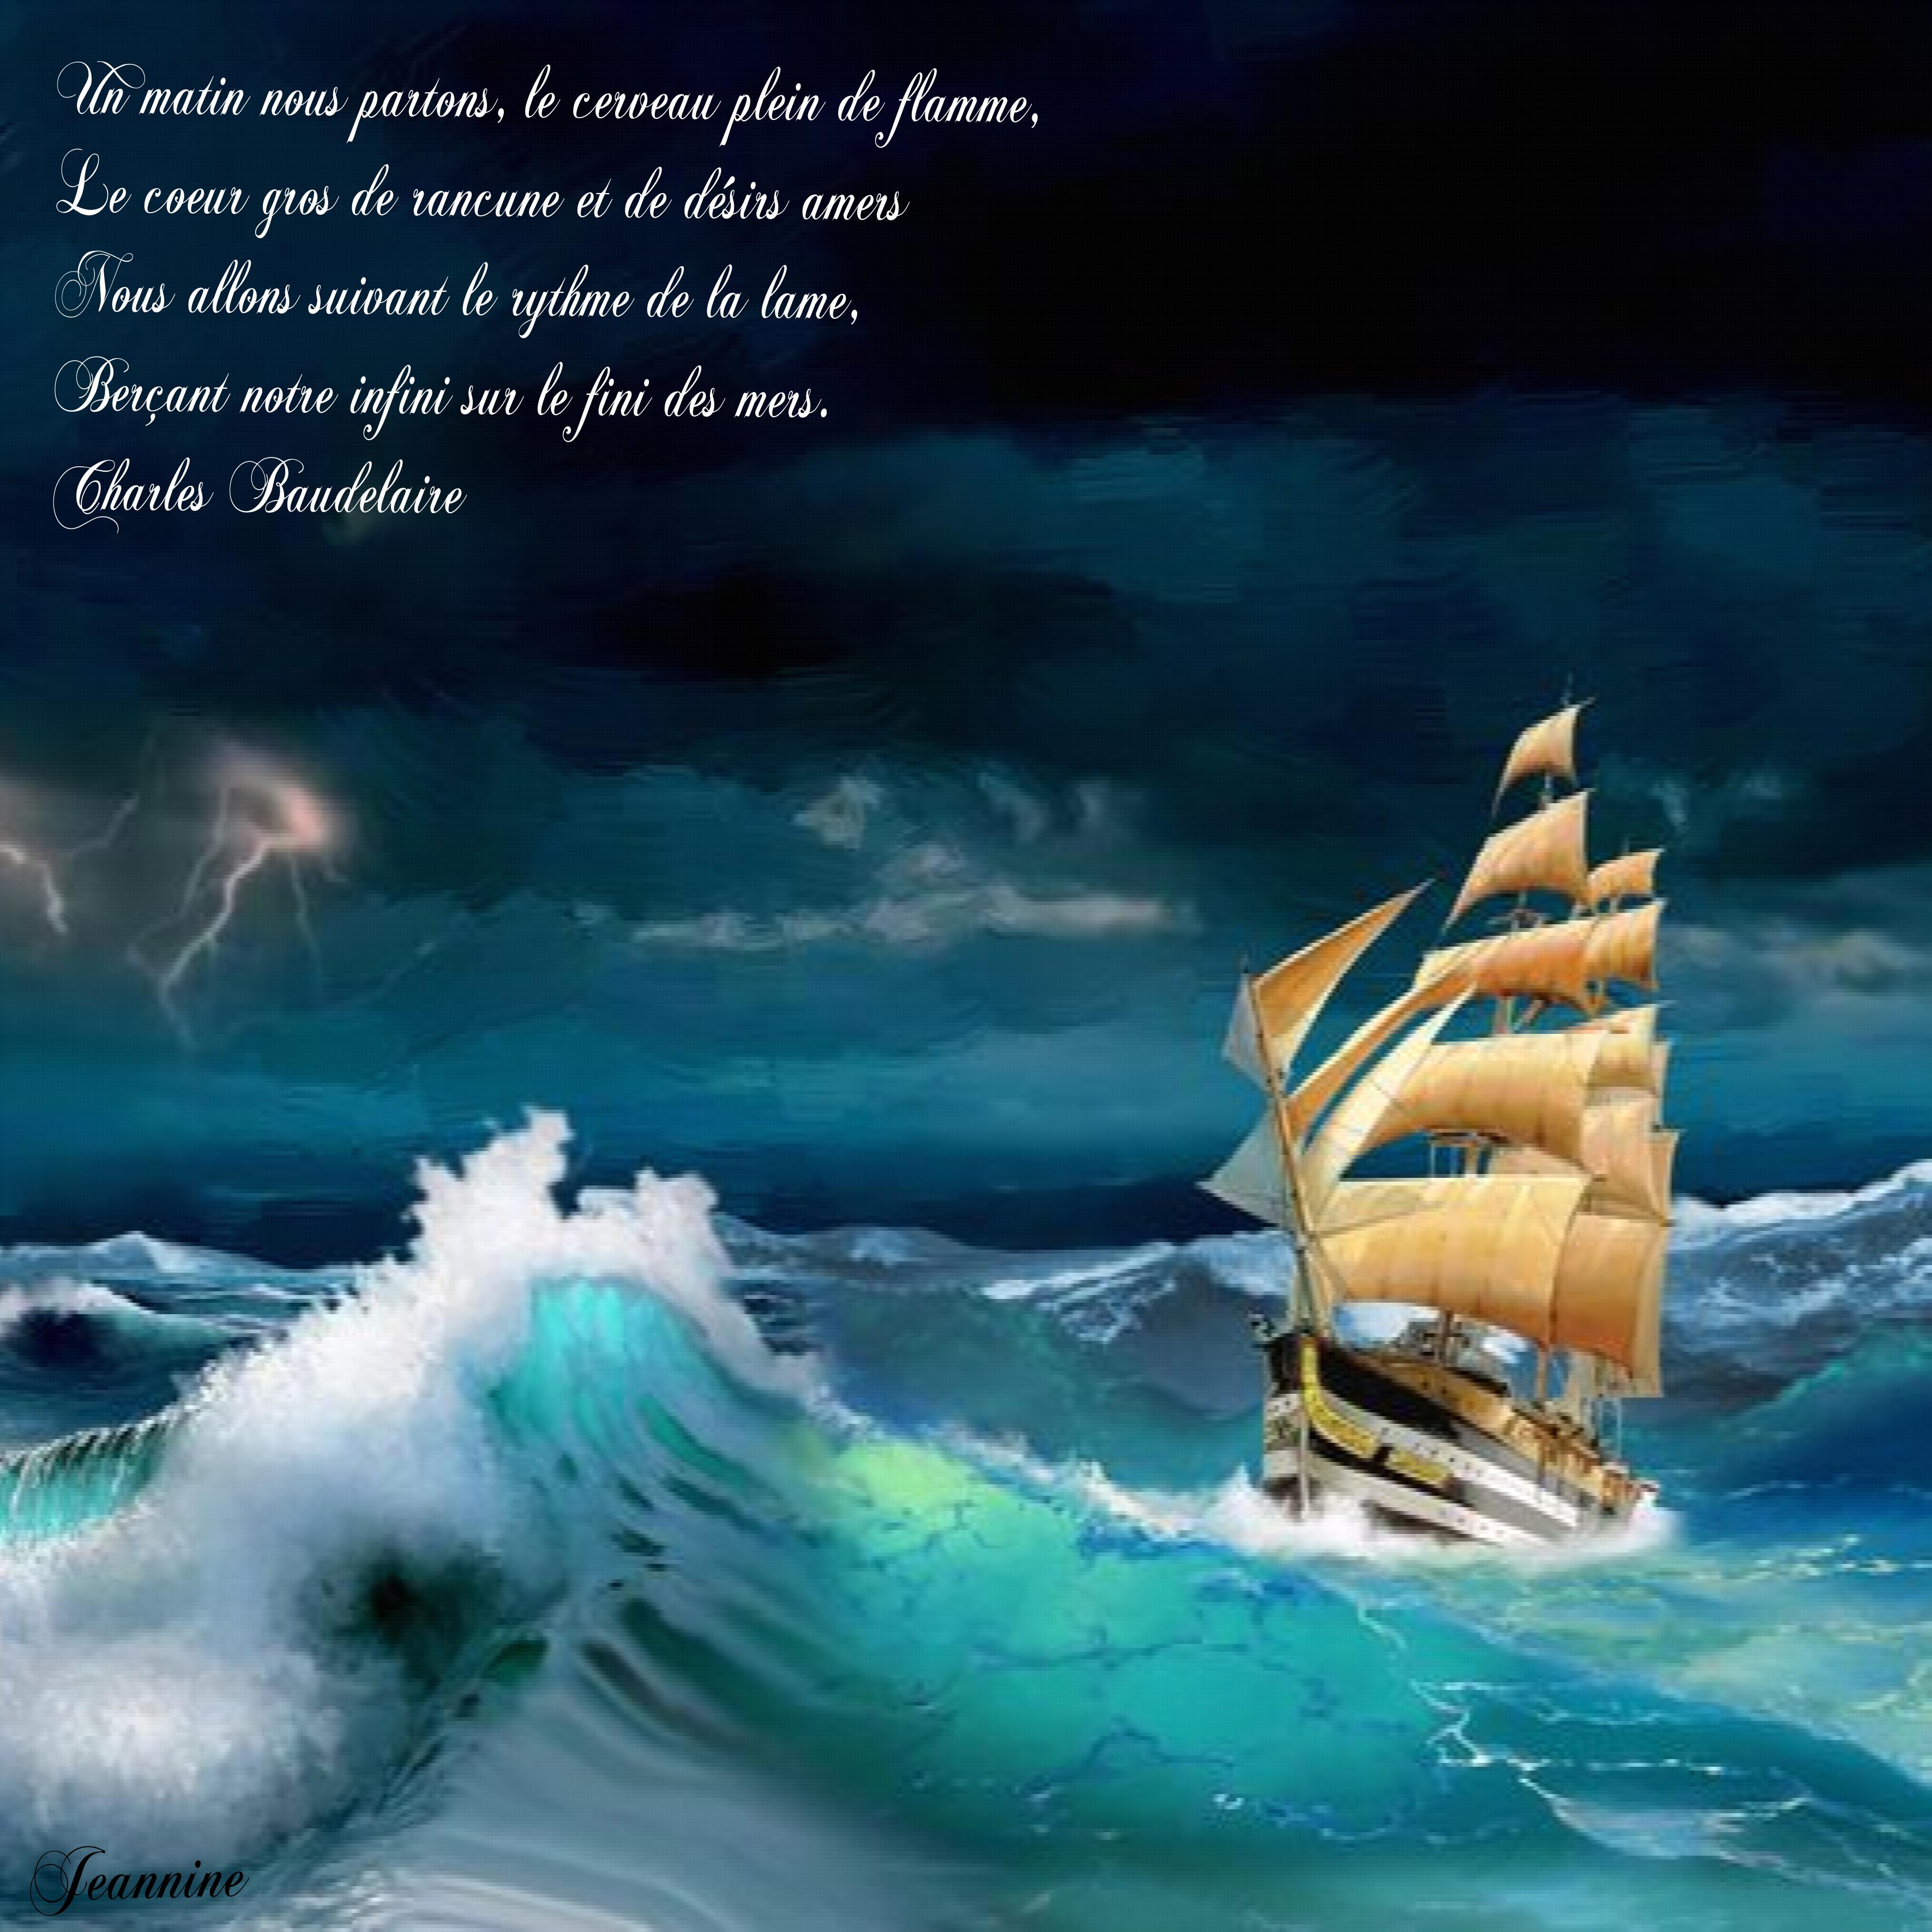 La mer de Baudelaire challenge poésie Jeannine.jpg